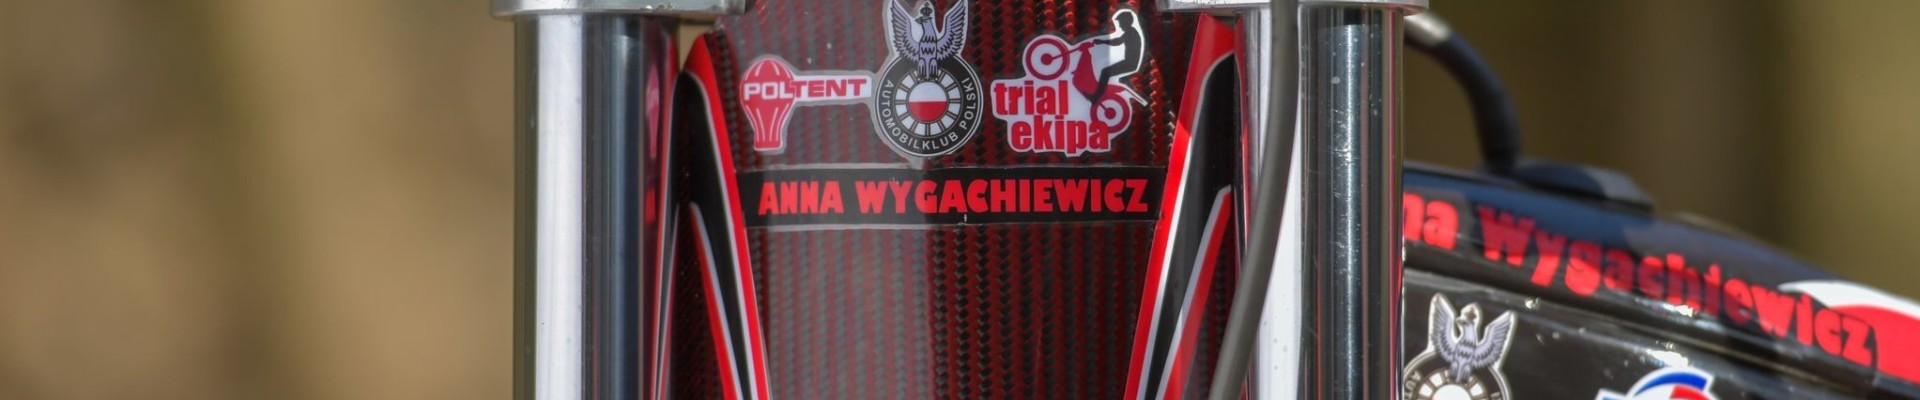 Anna Wygachiewicz